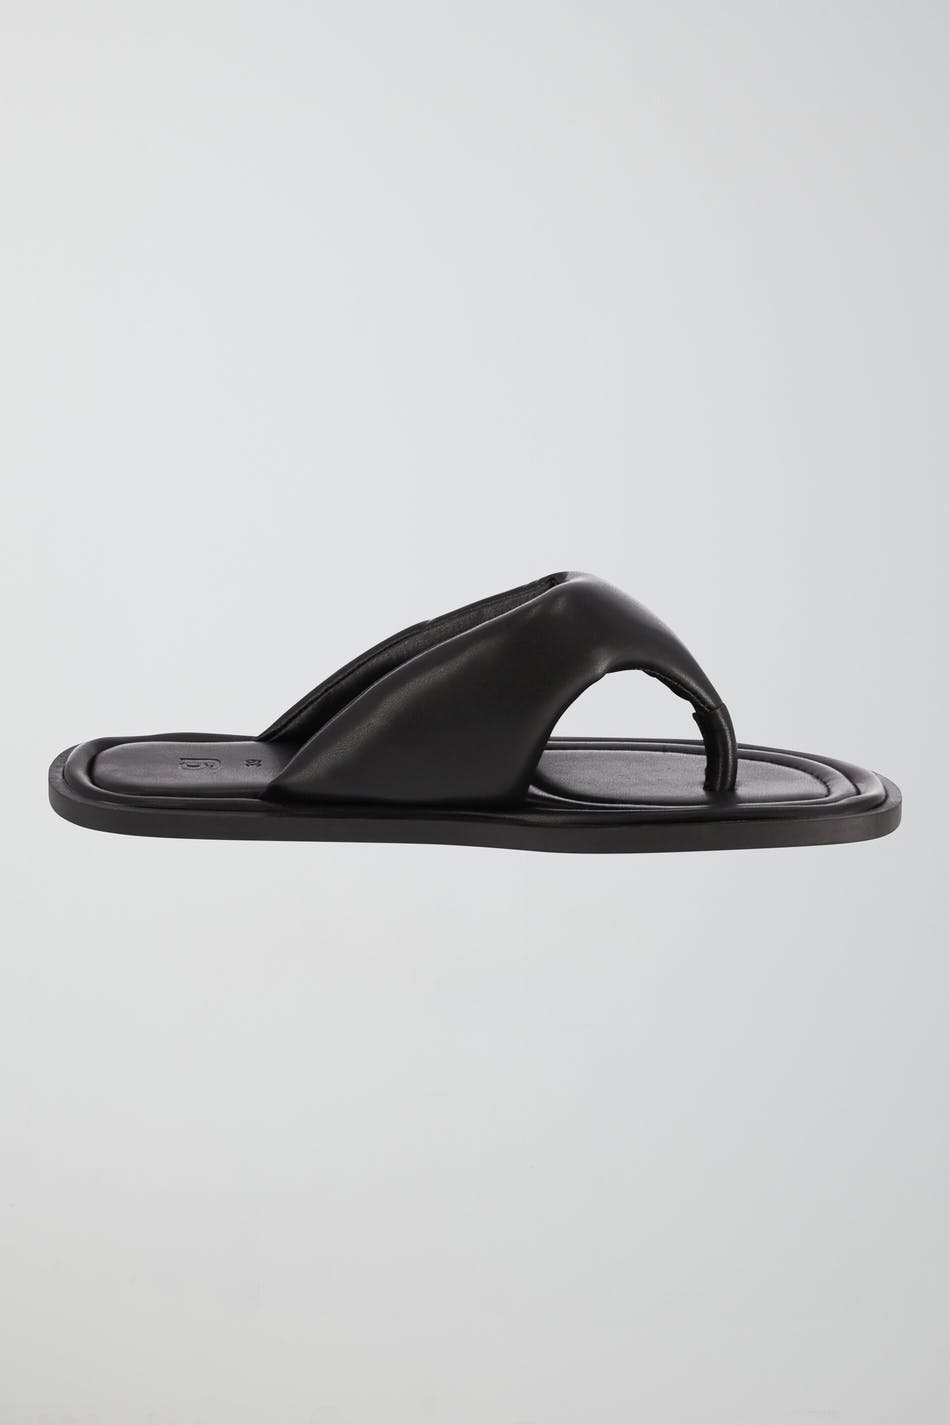 Gina Tricot - Flip flop sandals - sandaler - Black - 40 - Female